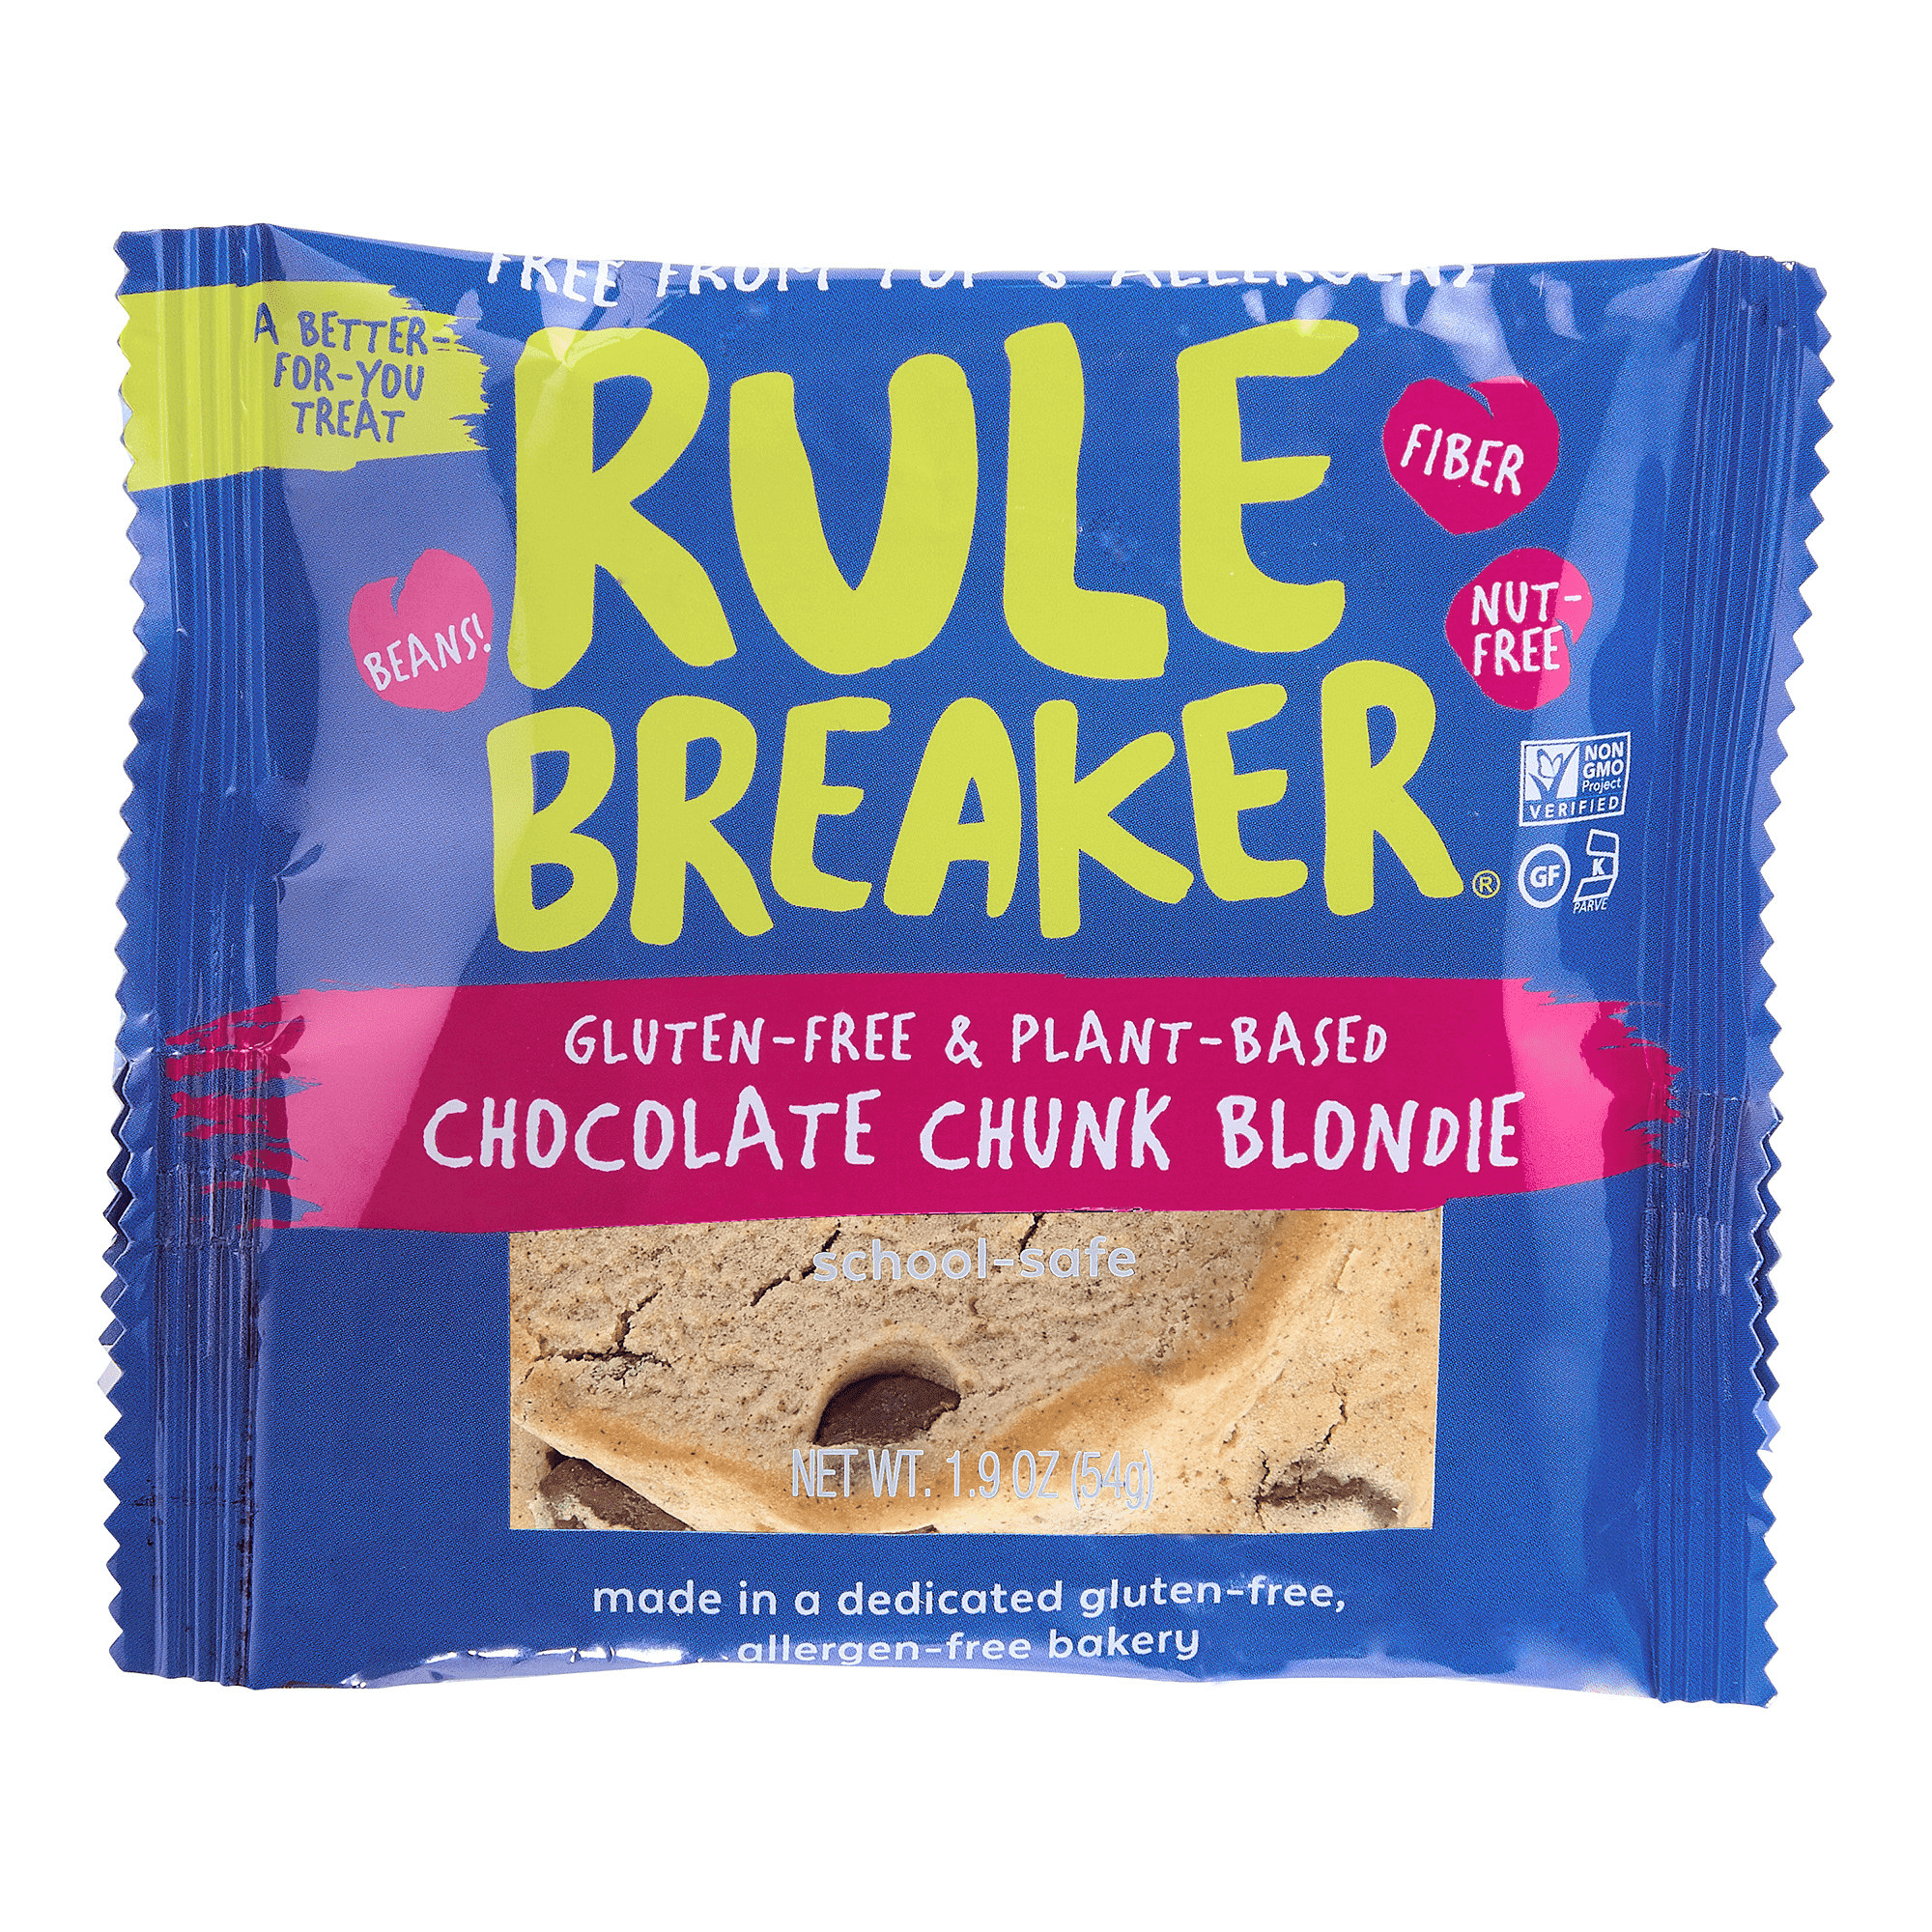 Rule Breaker Snacks Chocolate Chunk Blondie 12 innerpacks per case 22.8 oz